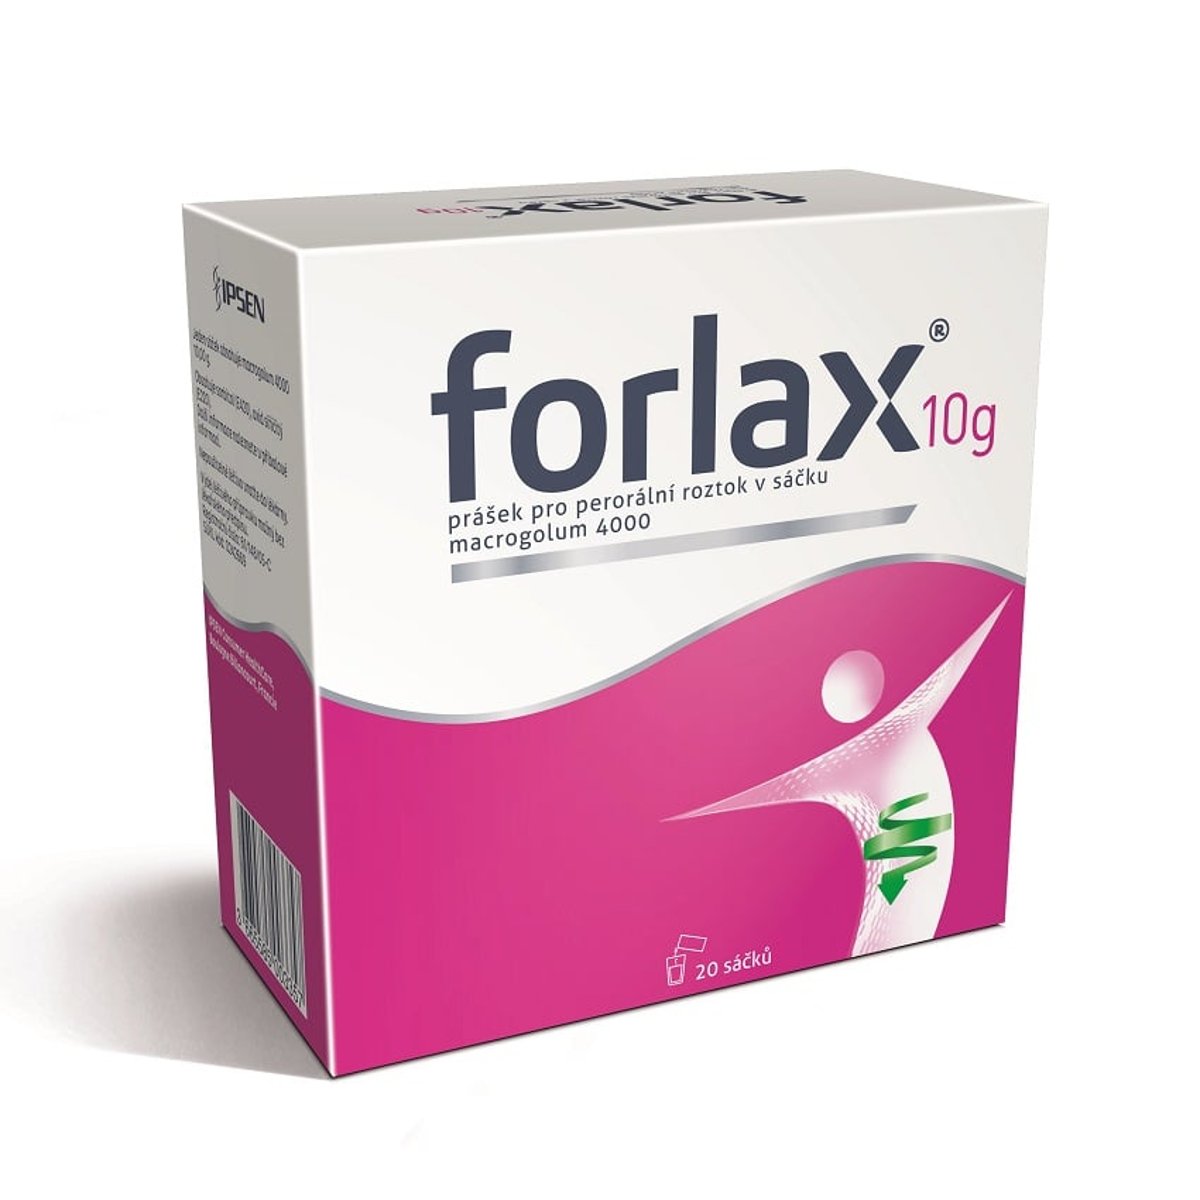 FORLAX 10G Prášek pro perorální roztok v sáčku 20